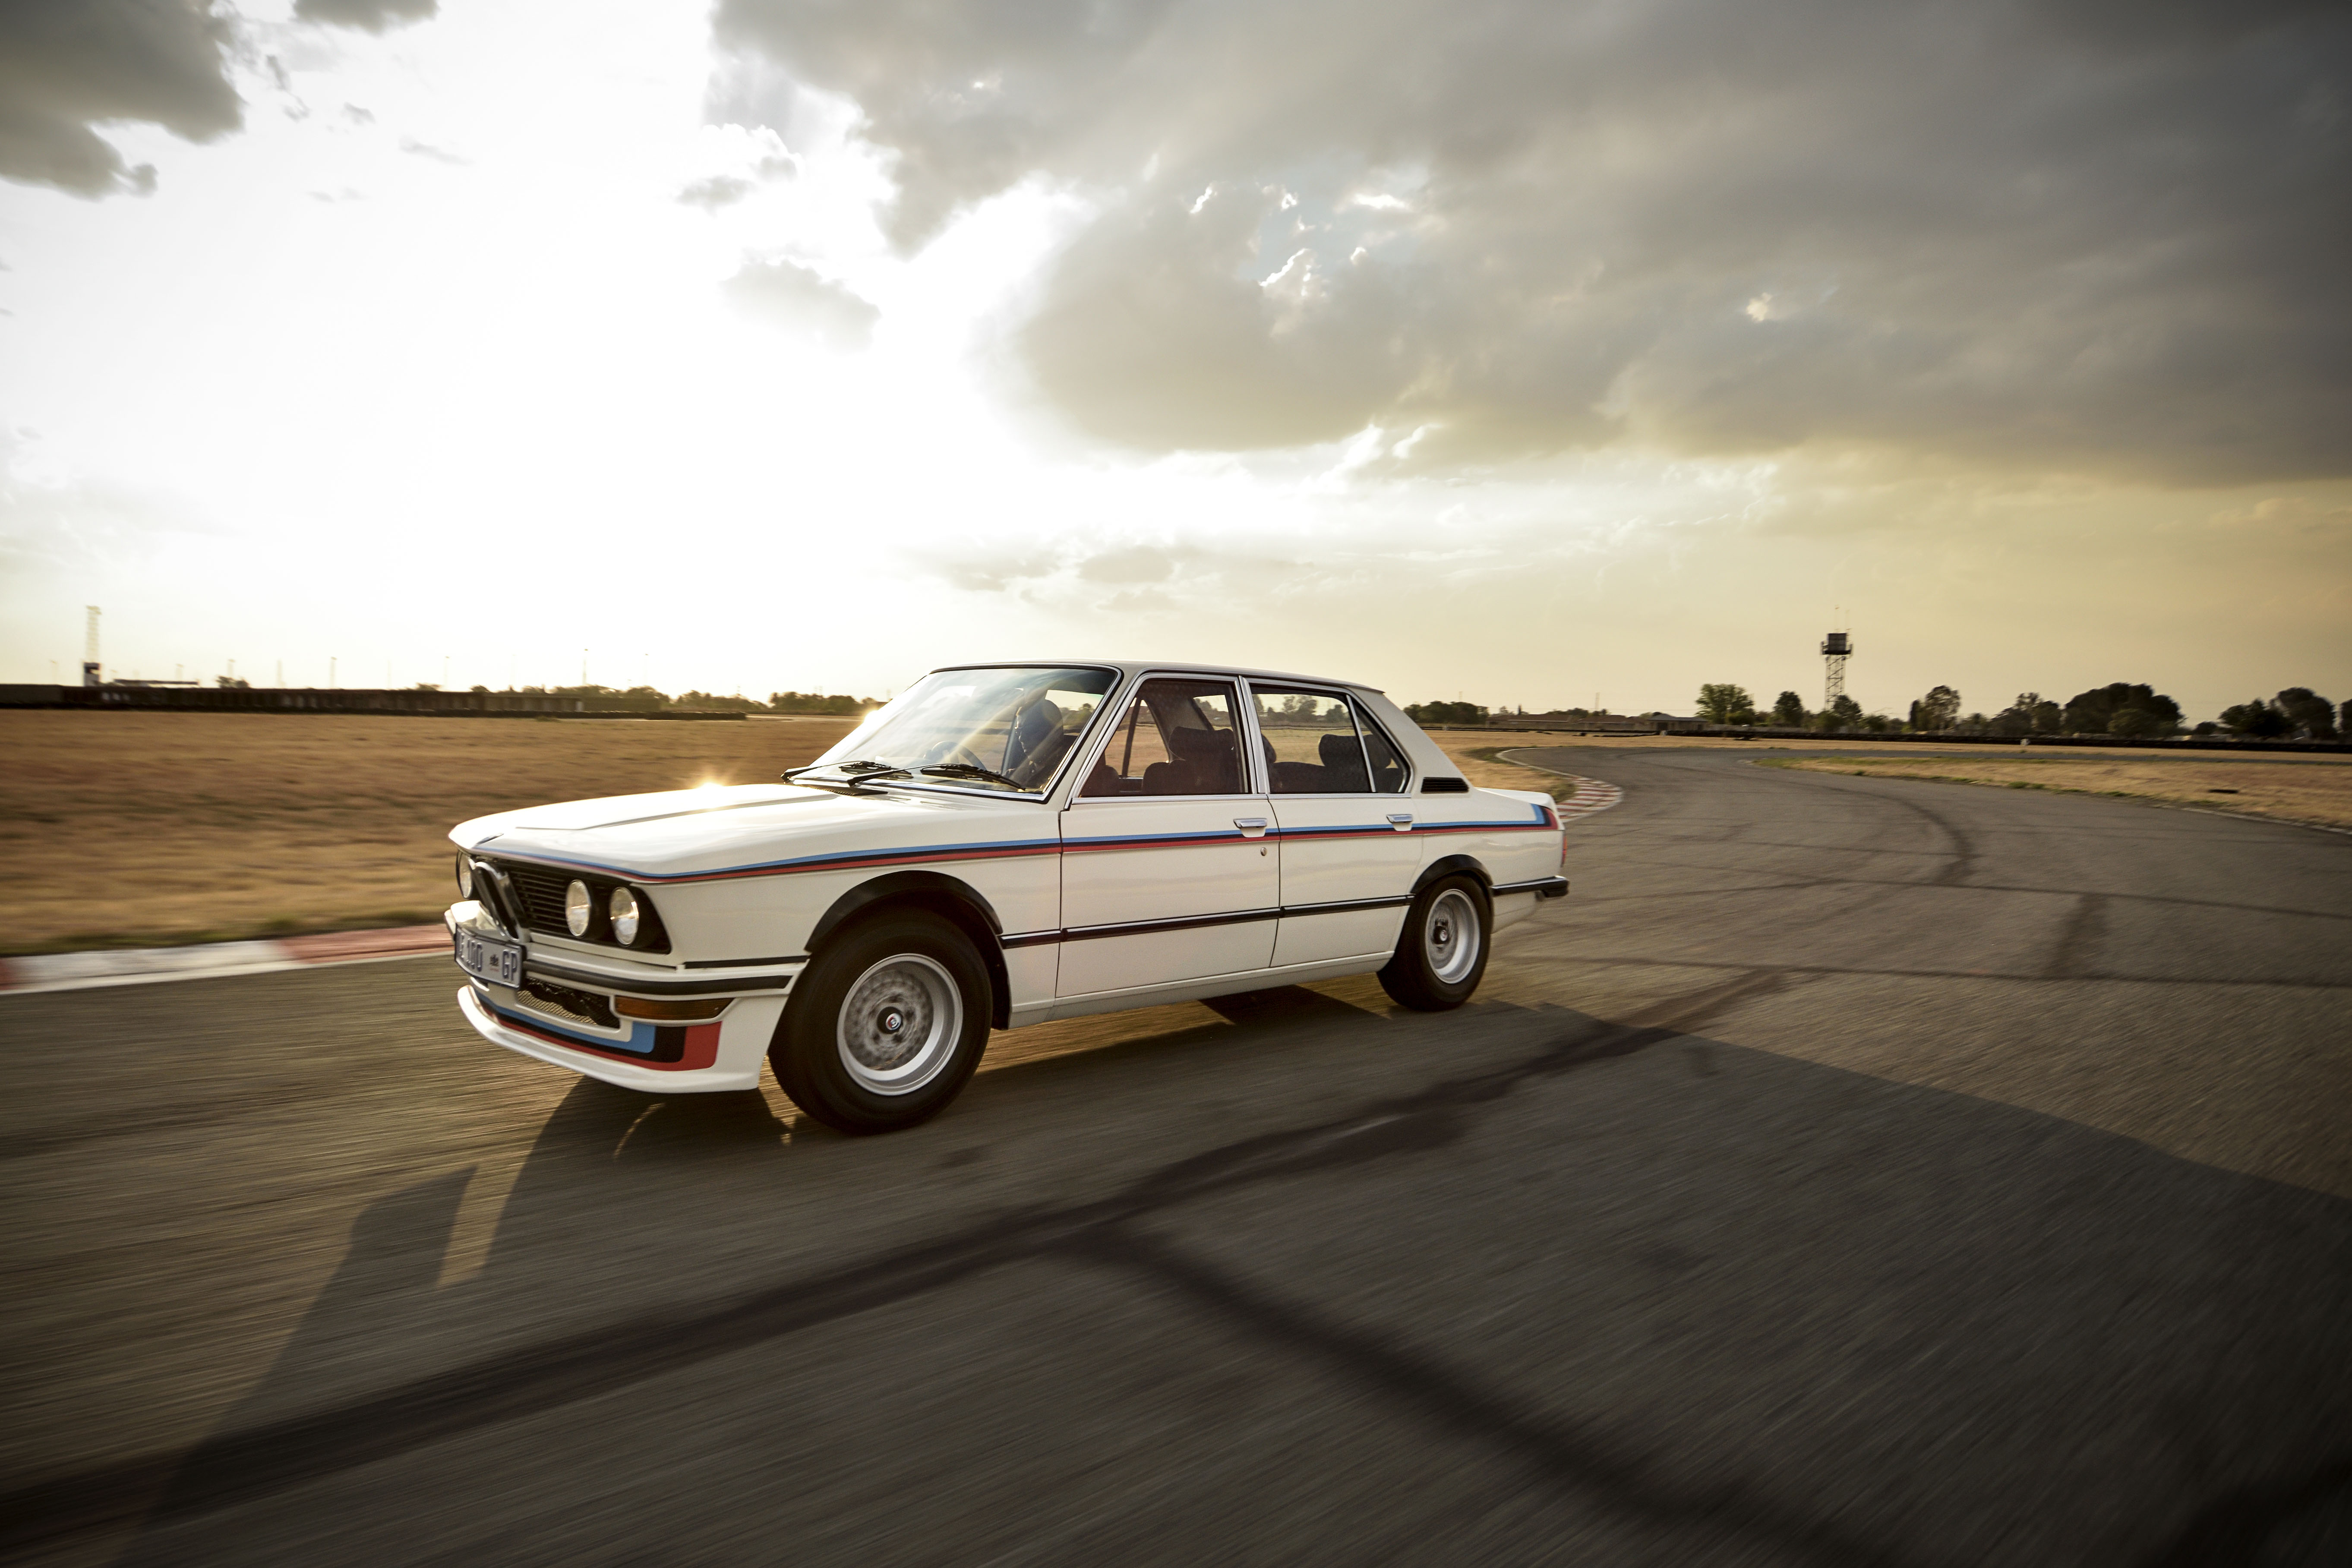 BMW Group South Africa ha svelato il suo ultimo progetto di restauro che ha avuto come protagonista la "leggendaria" BMW 530 MLE (Motorsport Limited Edition).